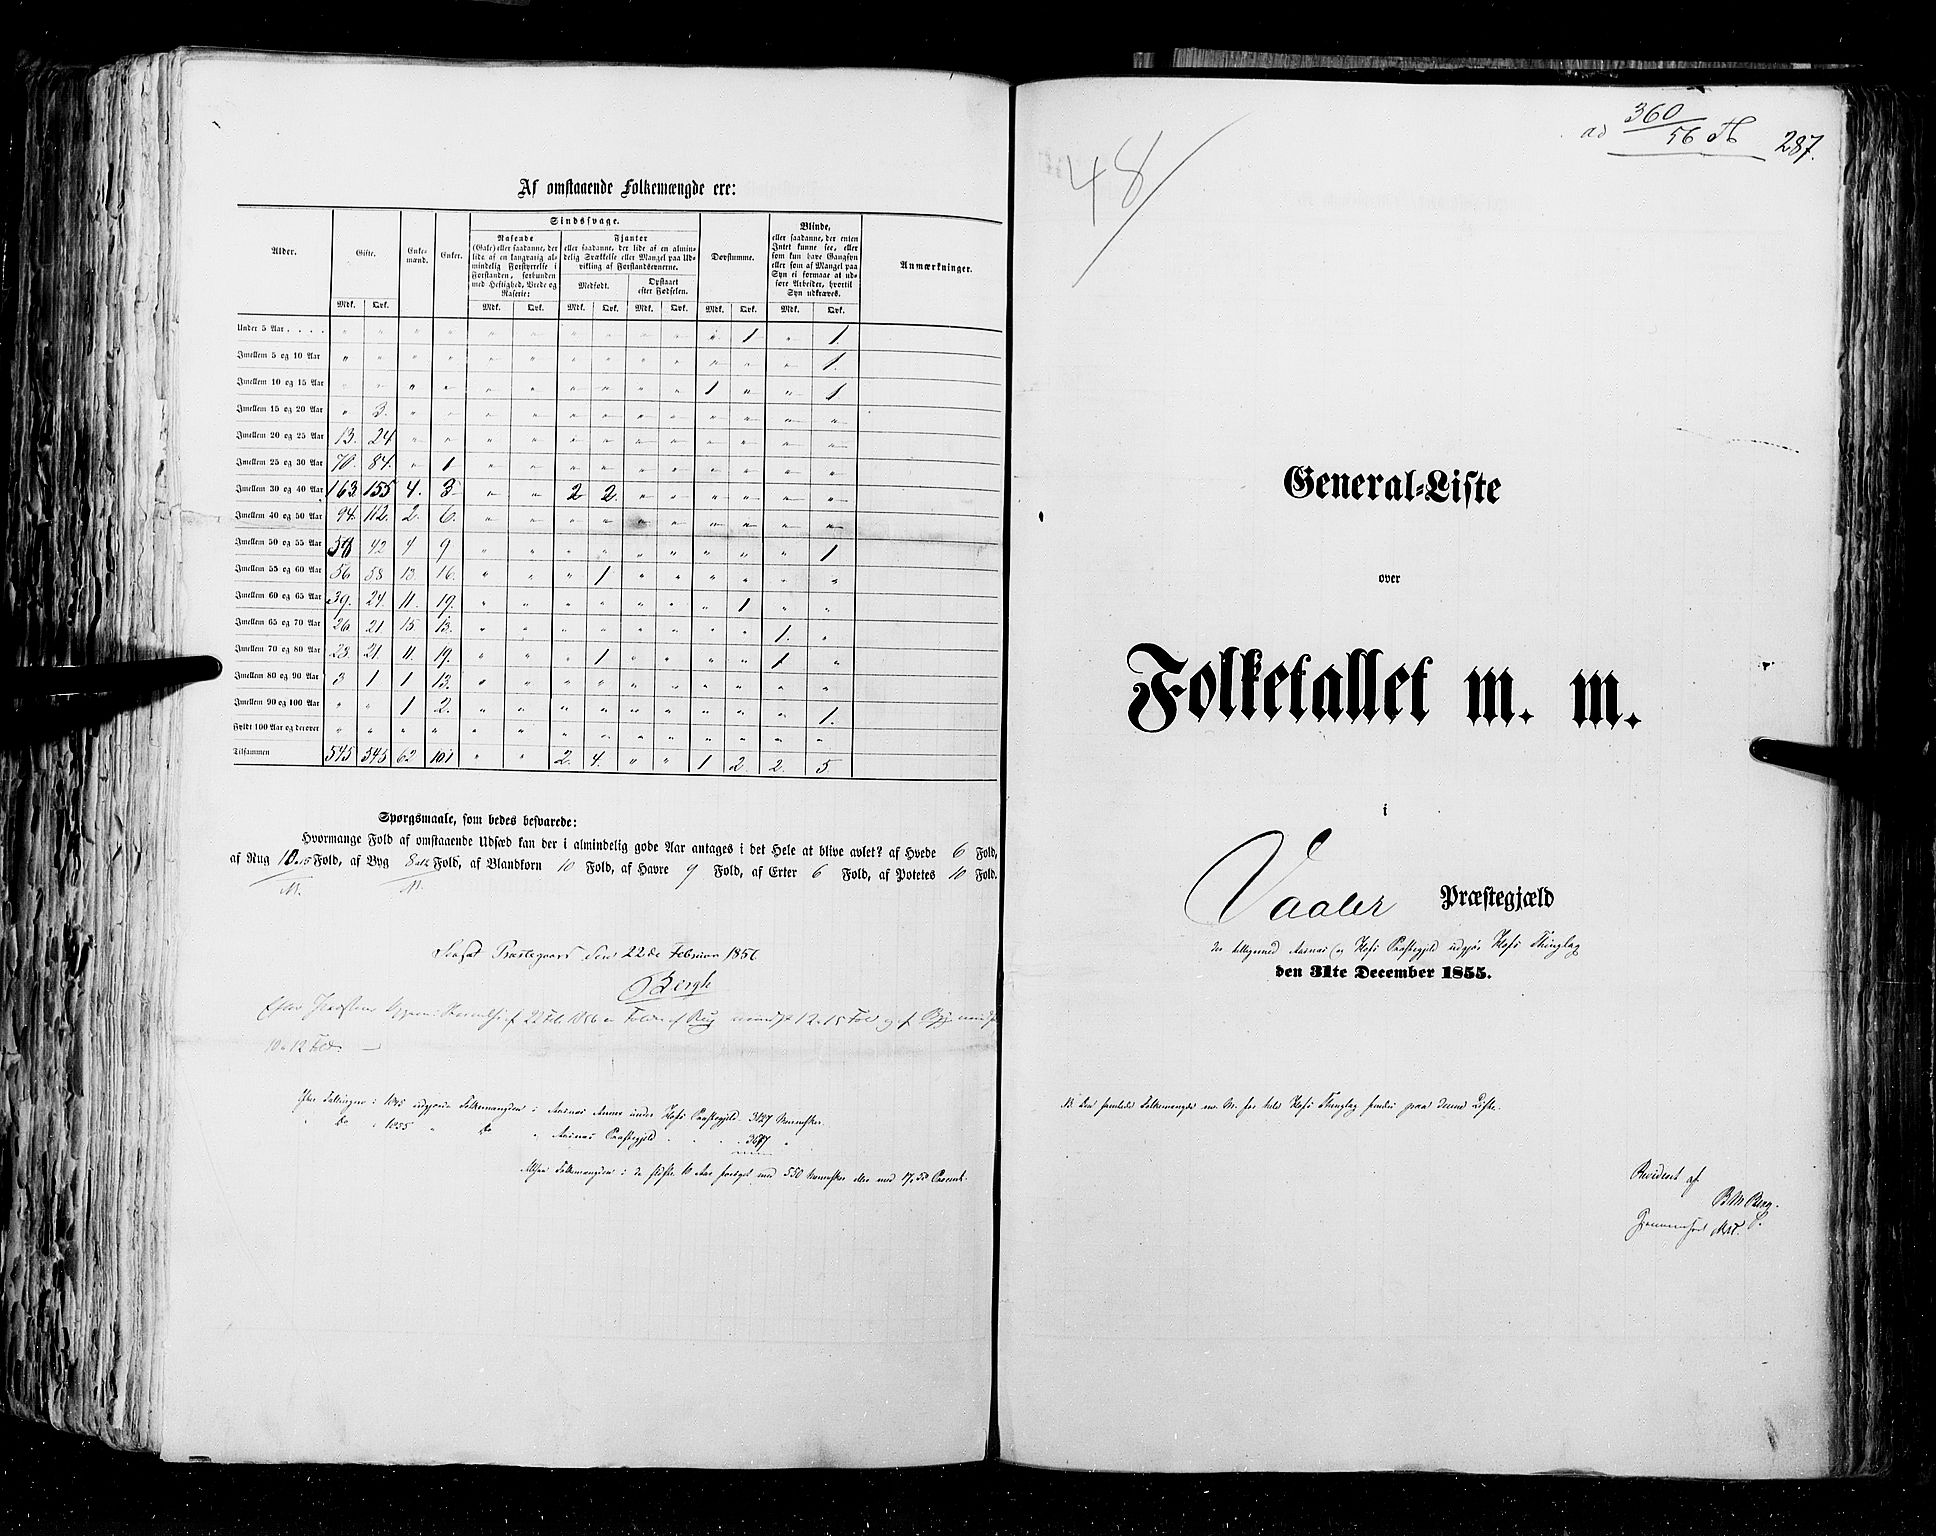 RA, Census 1855, vol. 1: Akershus amt, Smålenenes amt og Hedemarken amt, 1855, p. 287